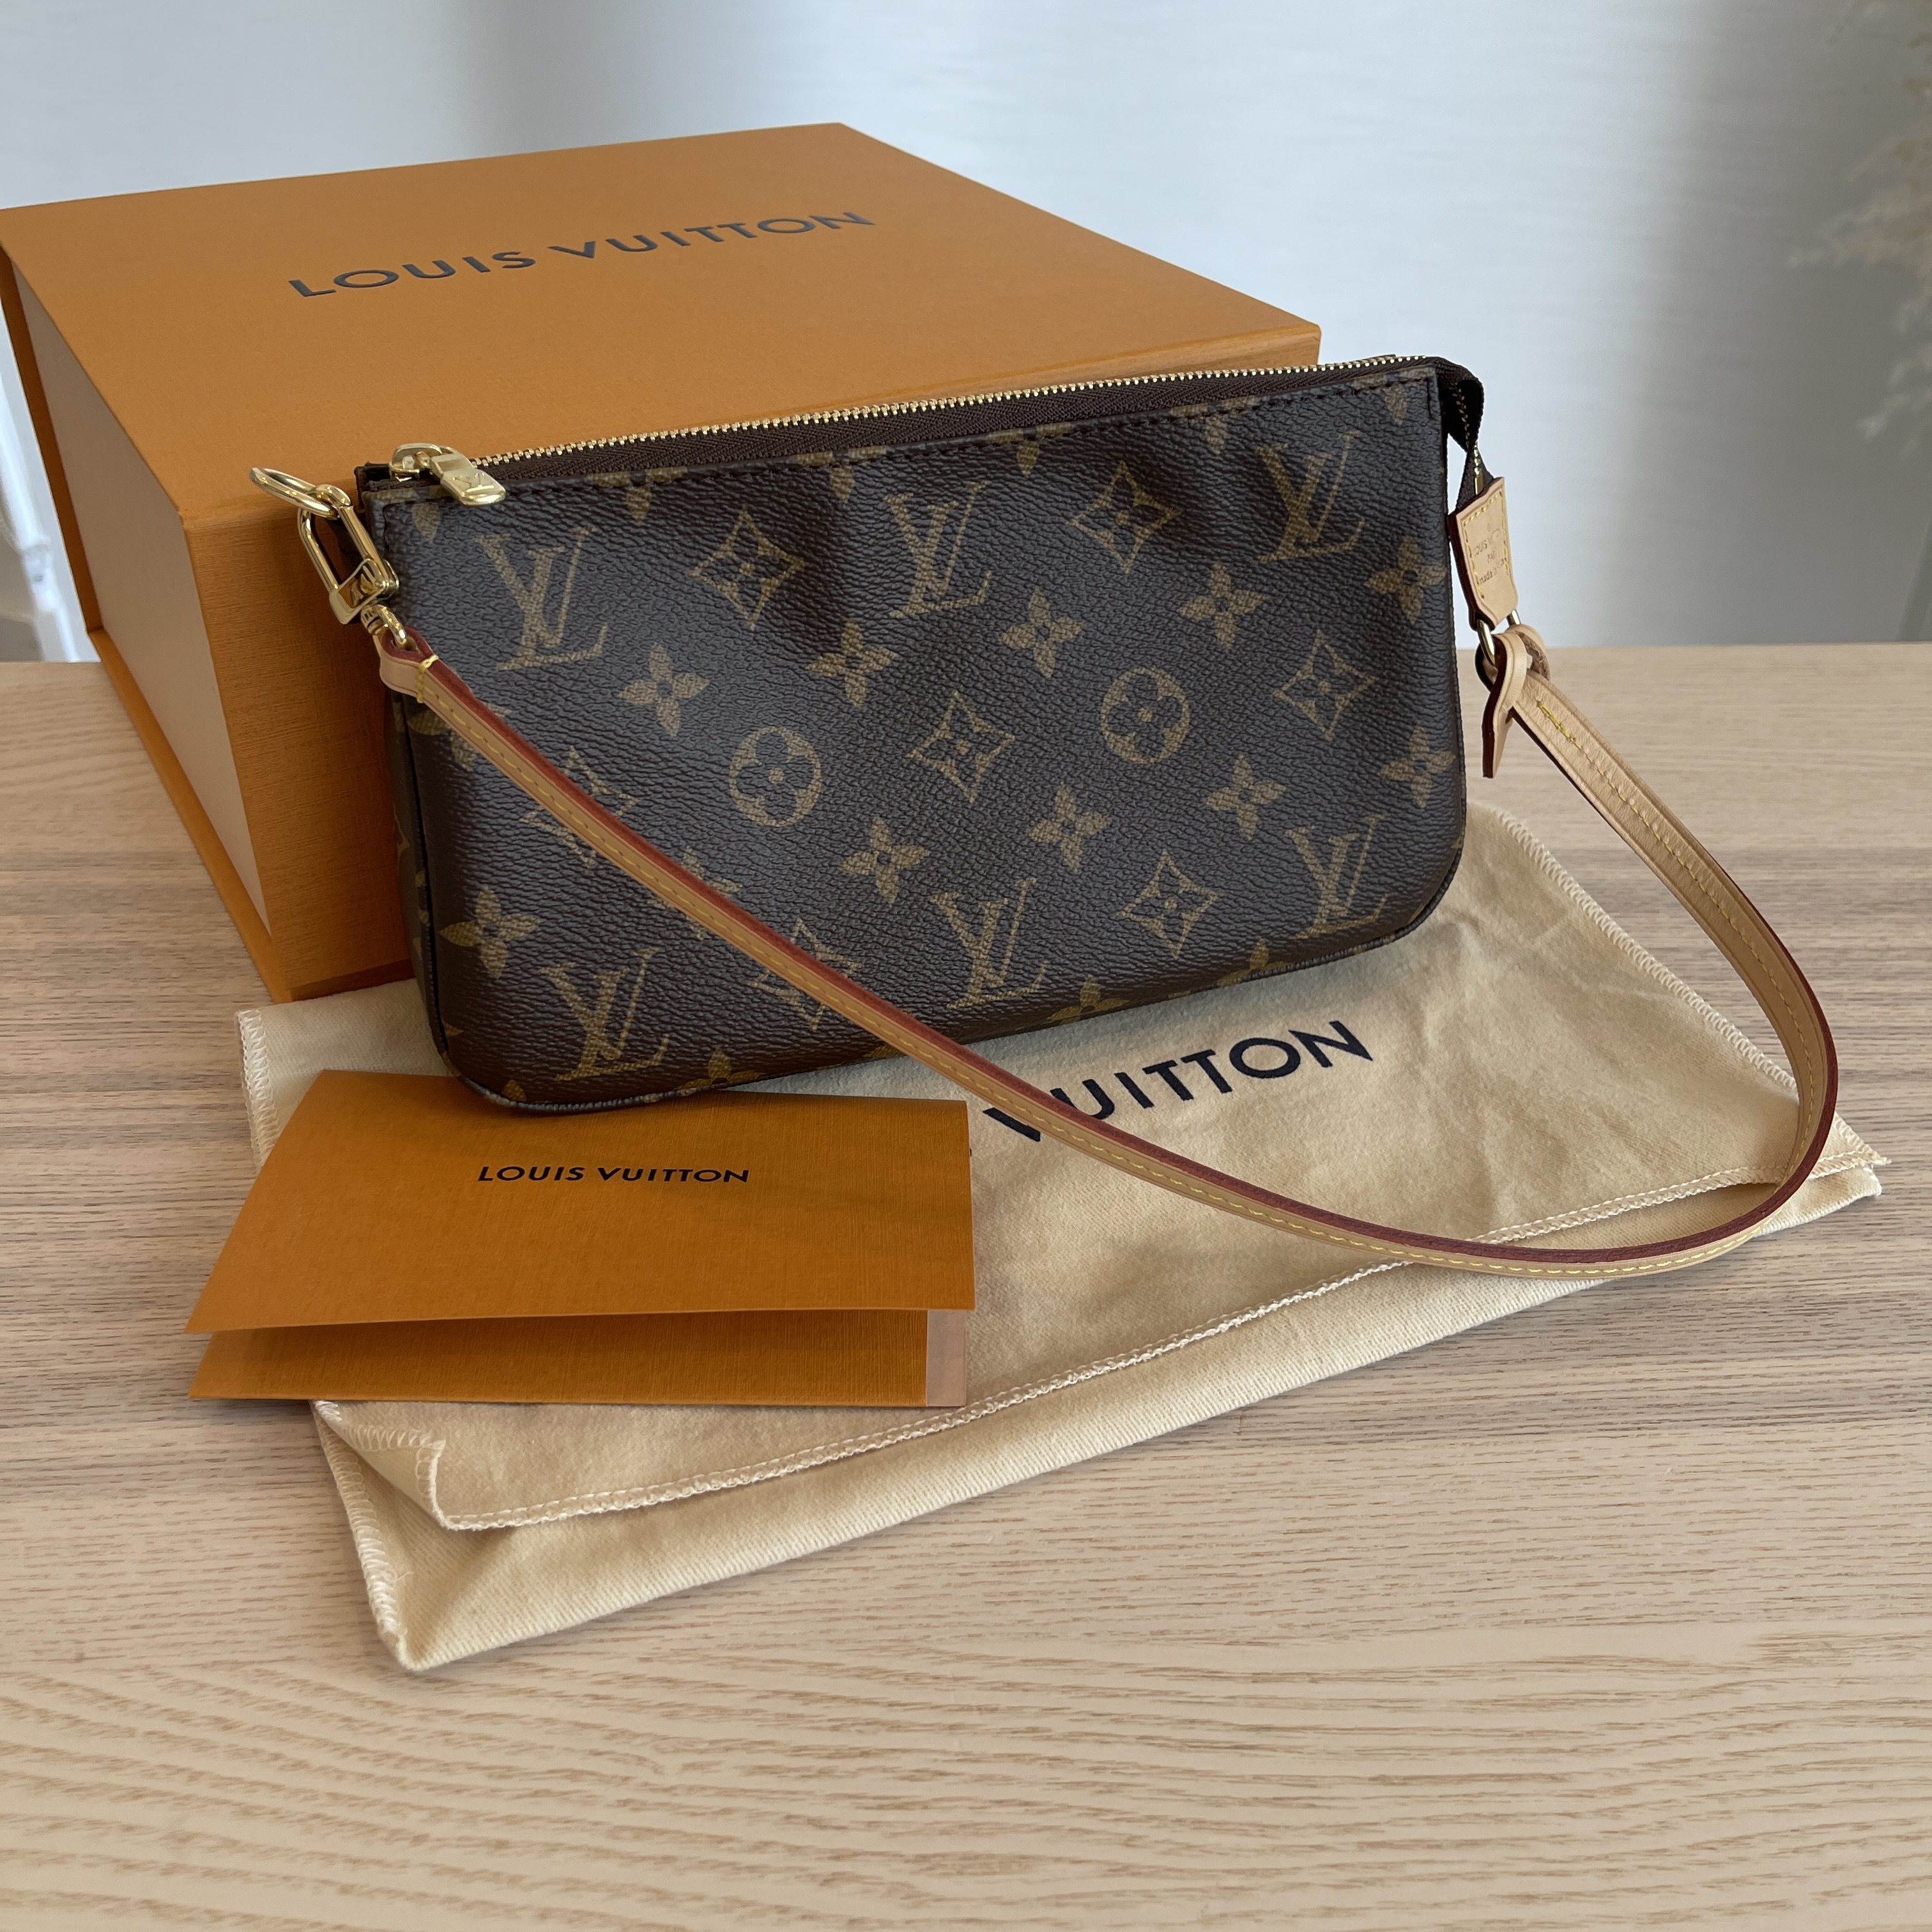 Louis Vuitton Pochette Accessoires NM in Monogram - SOLD